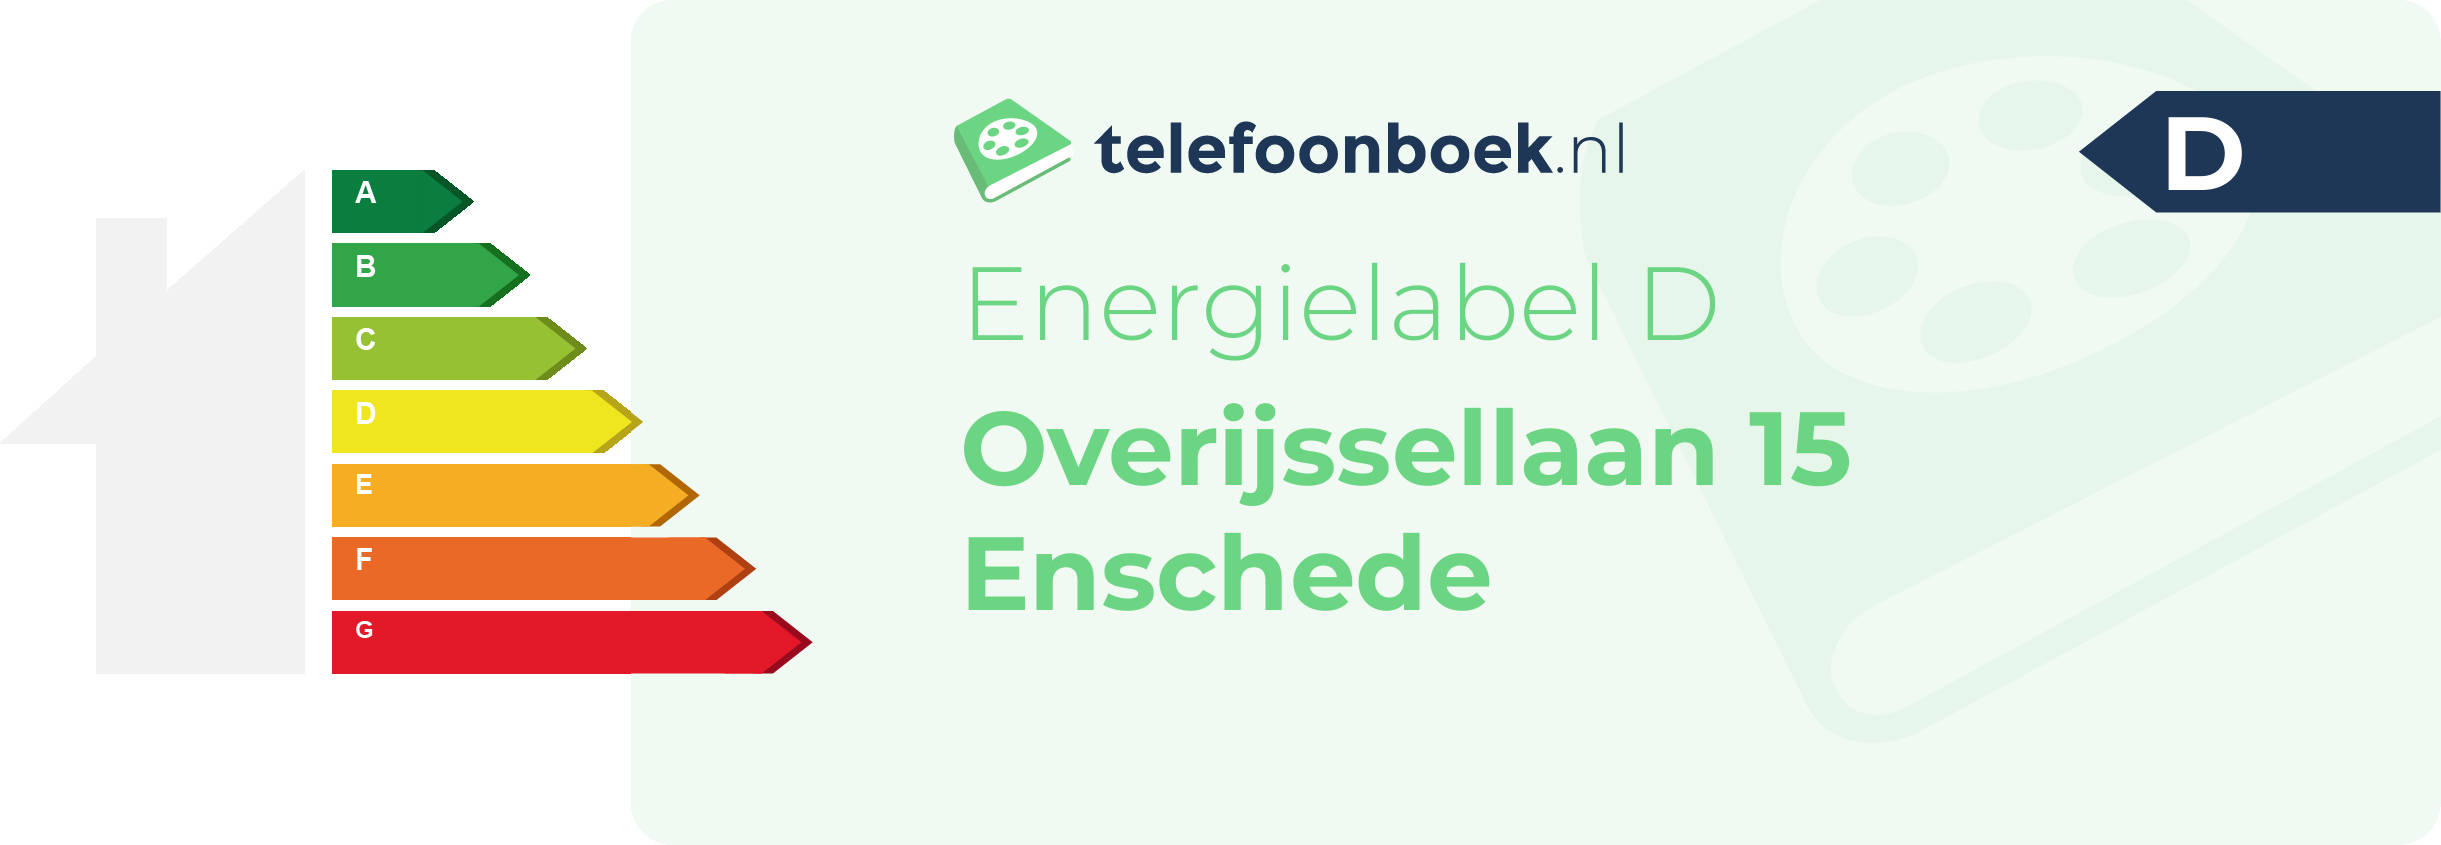 Energielabel Overijssellaan 15 Enschede